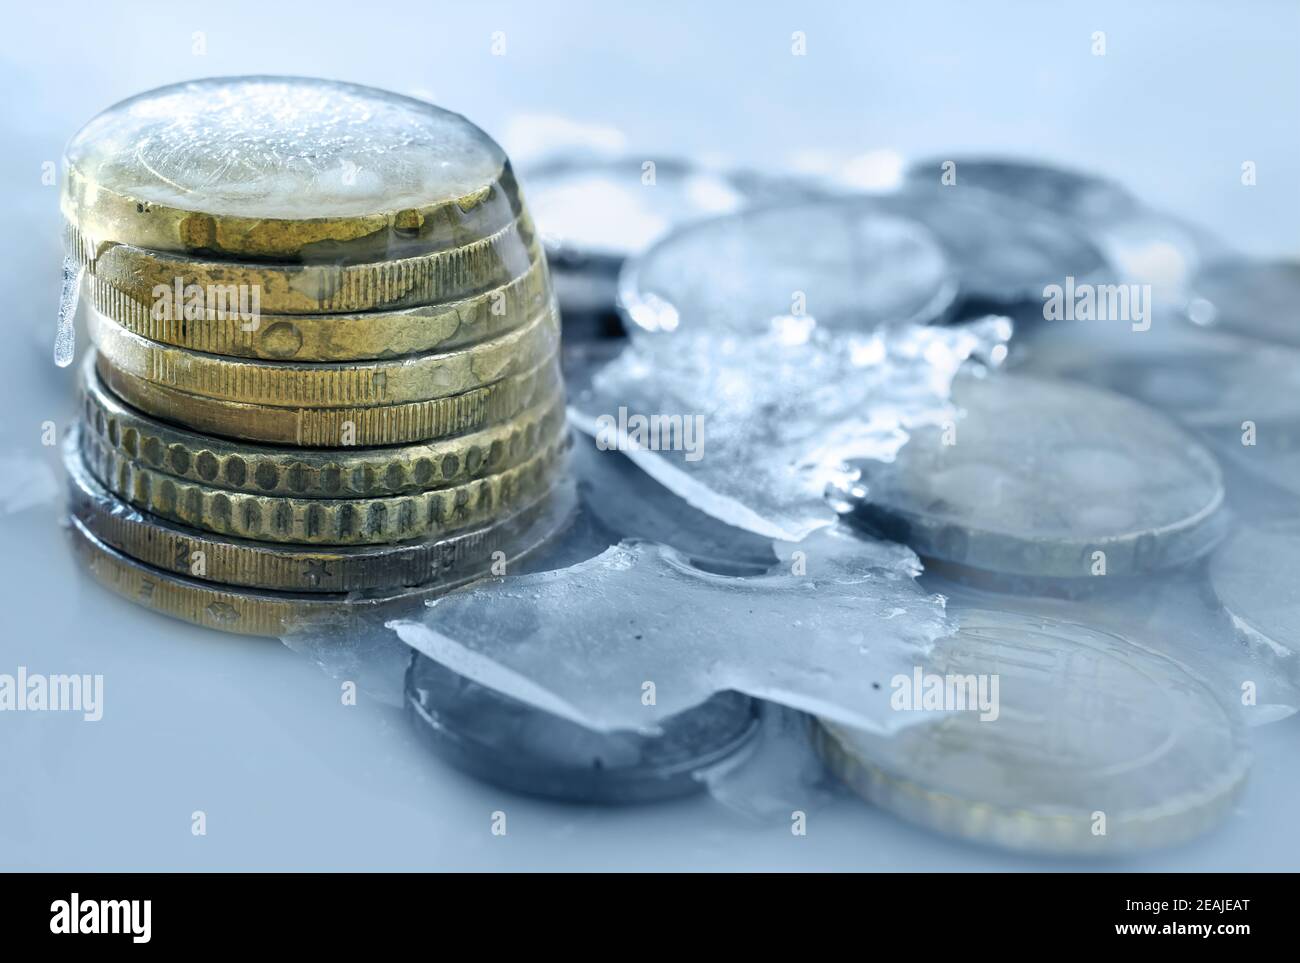 Im Eis eingefrorene Euro-Münzen. Gefrorenes Geld, Euro im Eis mit Eiszapfen Stockfoto